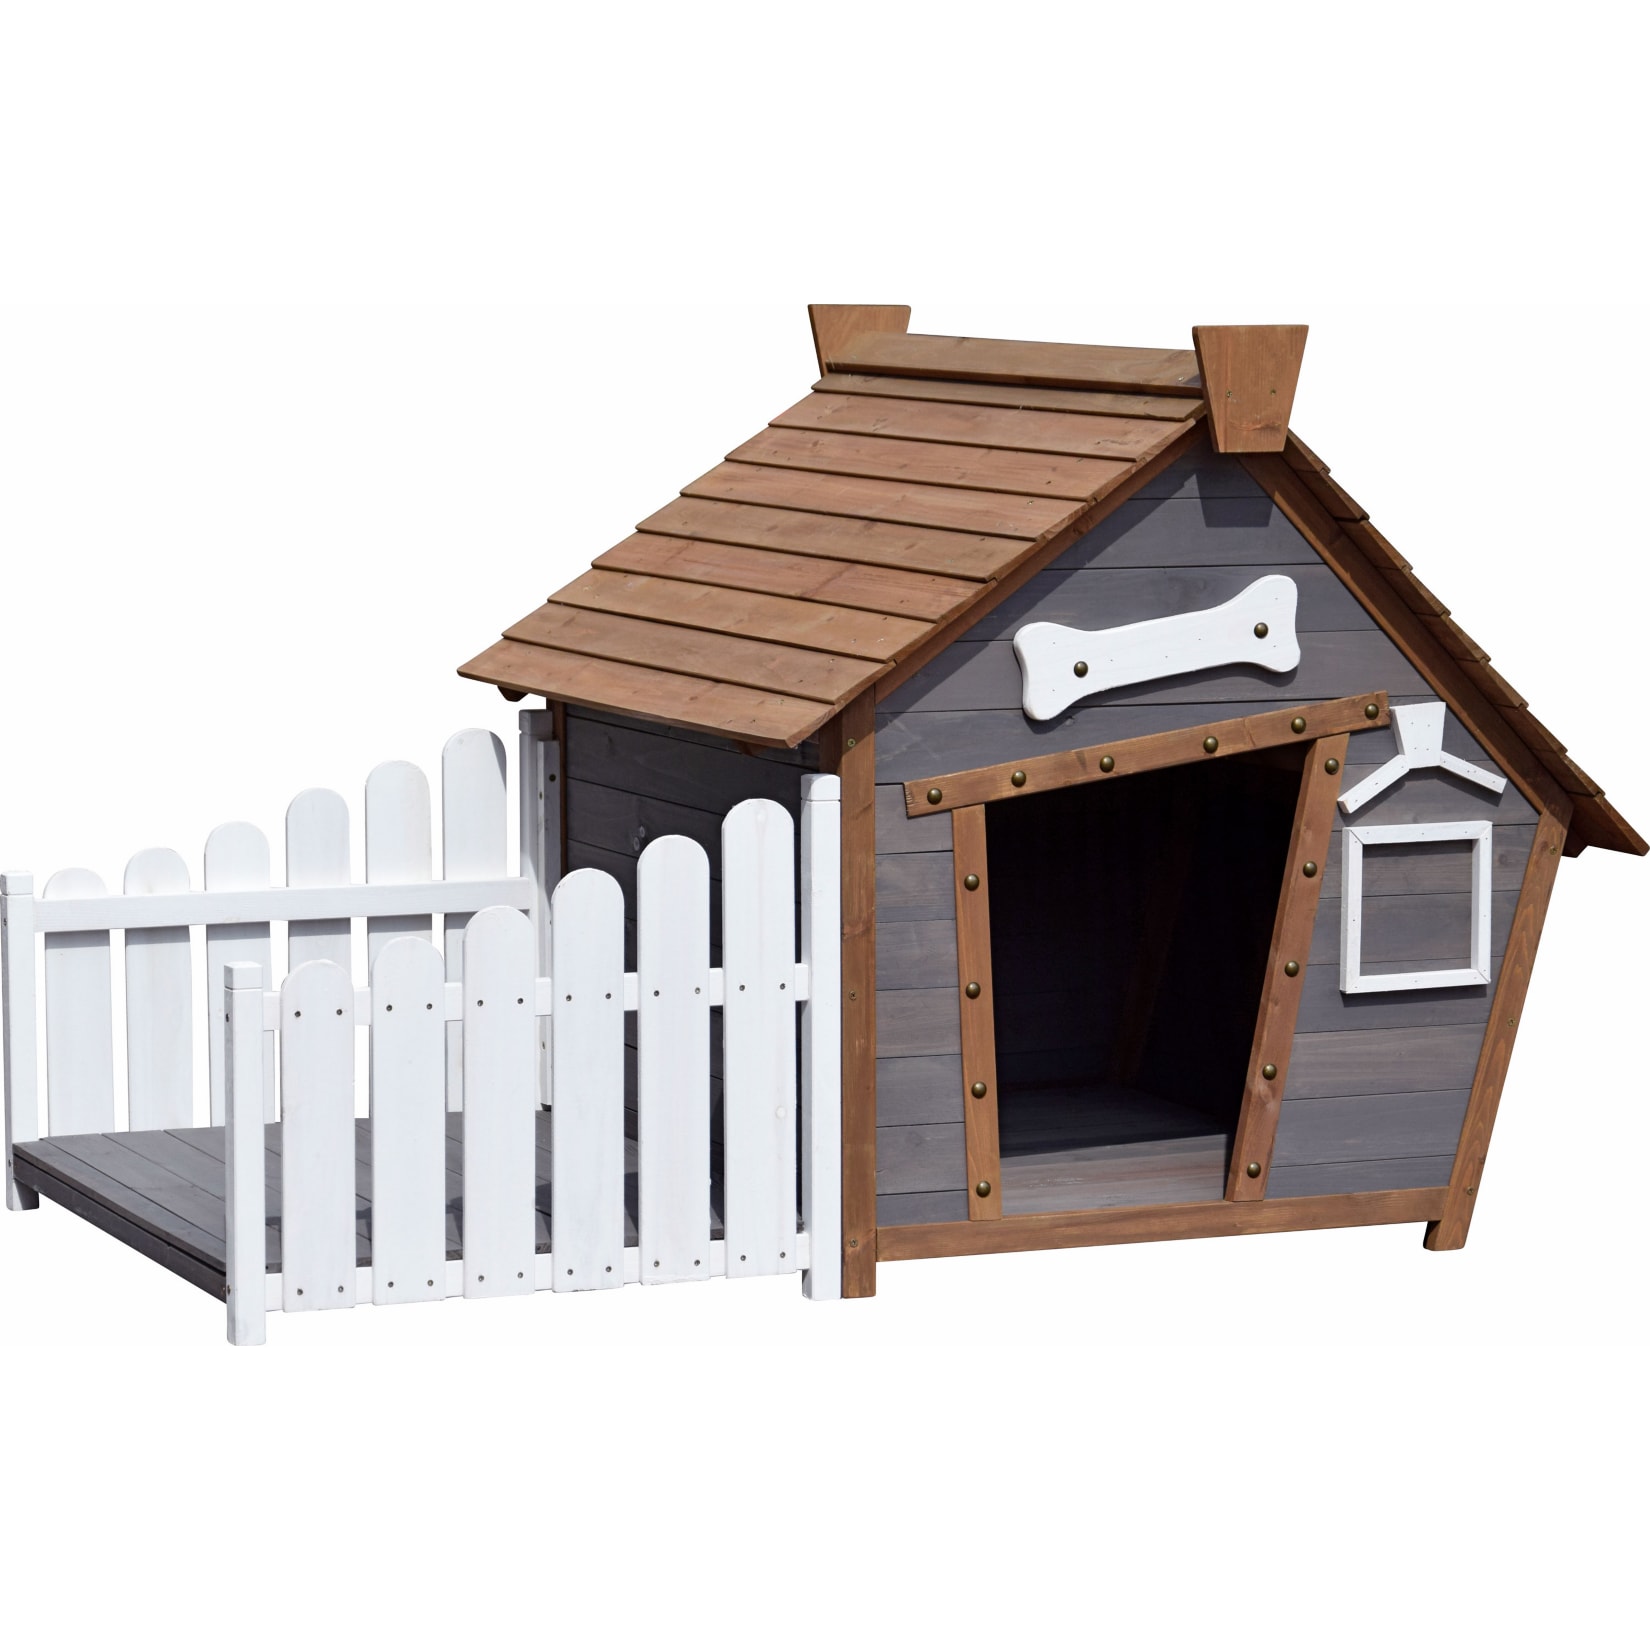 Dobar Outdoor-Hundehütte mit Spitzdach und seitlicher Veranda